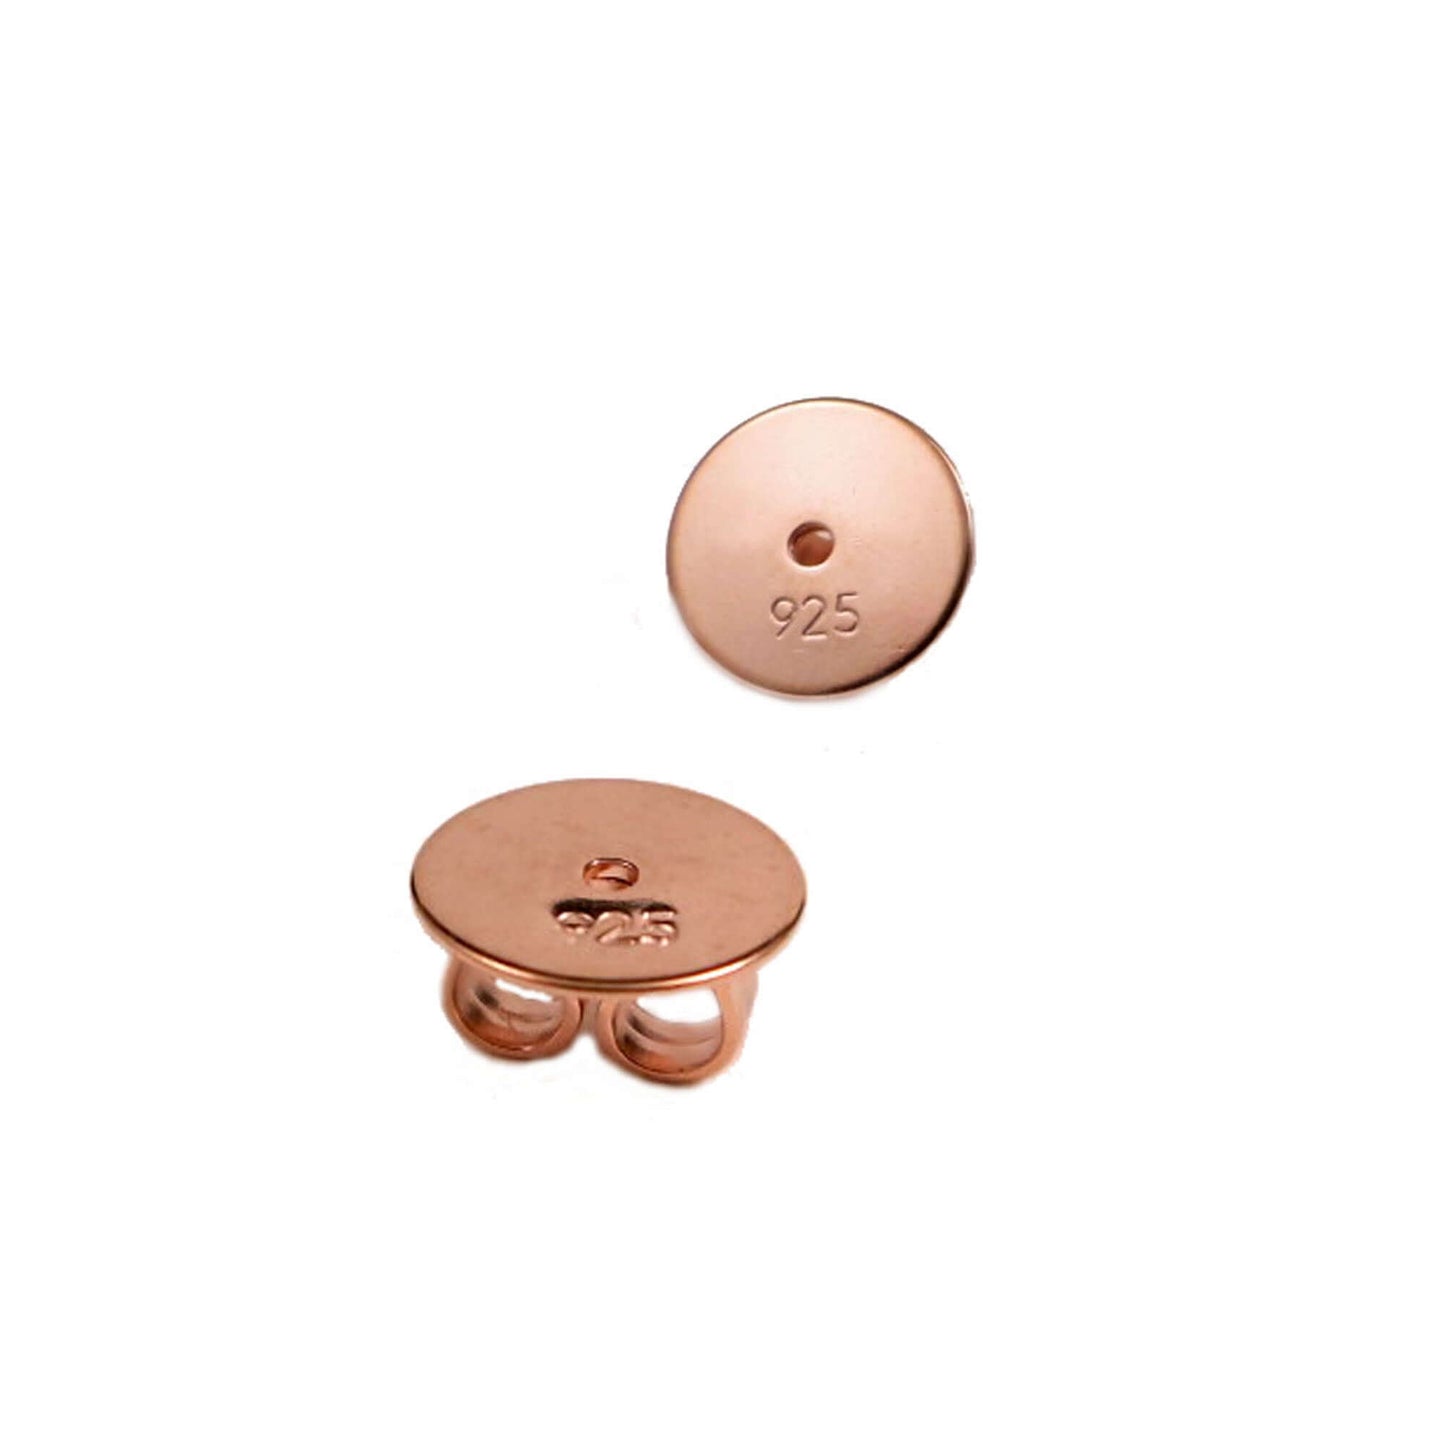 XL Ohrmutter 8mm rosévergoldet Silber 925/- für schwere Ohrstecker oder größere Ohrlöcher